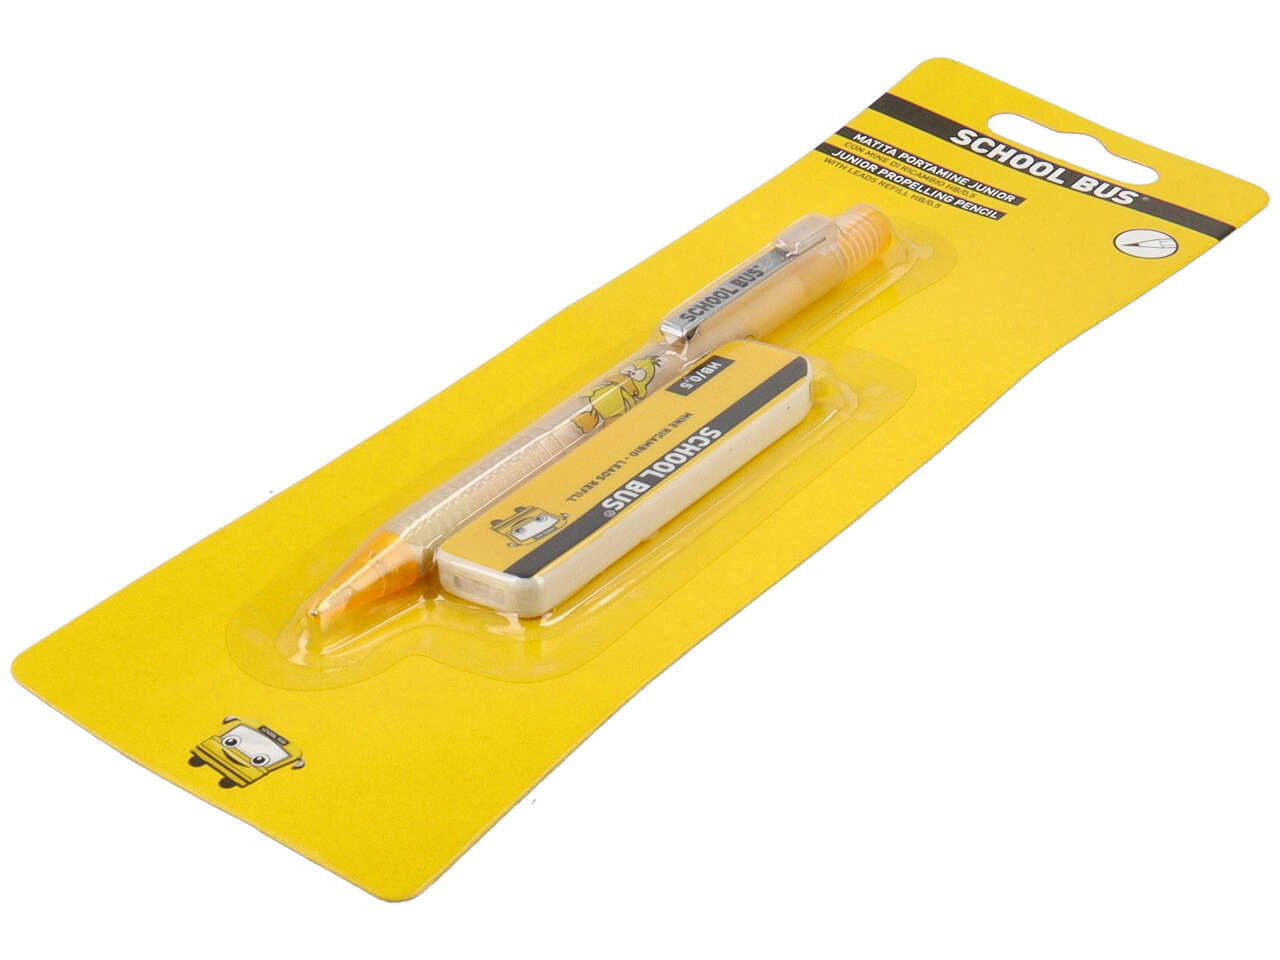 matita portamine junior con meccanismo a scatto, impugnatura antiscivolo e  mine di ricambio hb 0,5mm